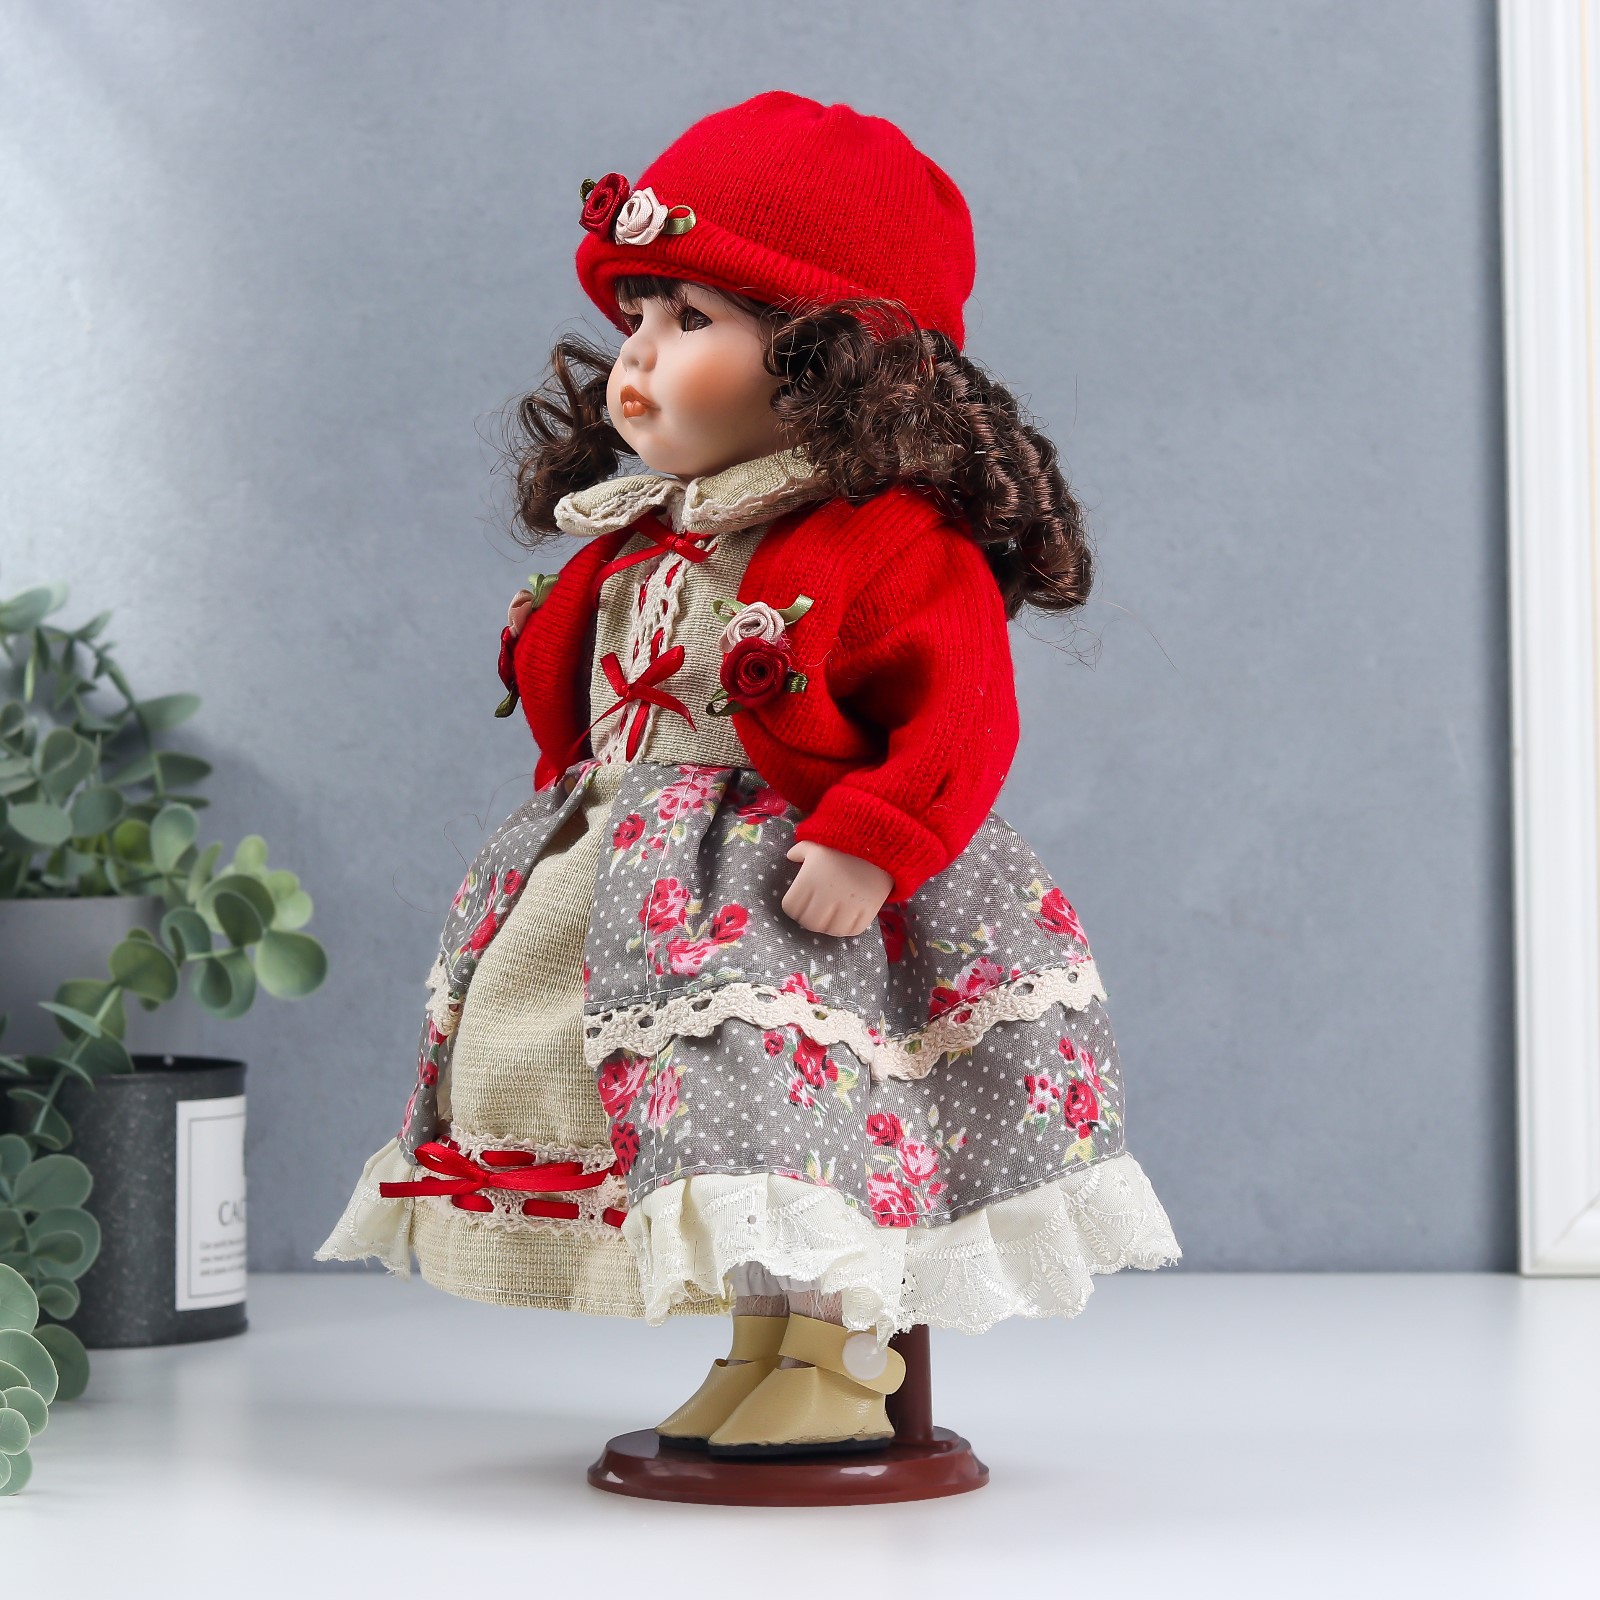 Кукла коллекционная Зимнее волшебство керамика «Лиза в платье с цветами в красном жакете» 30 см - фото 3